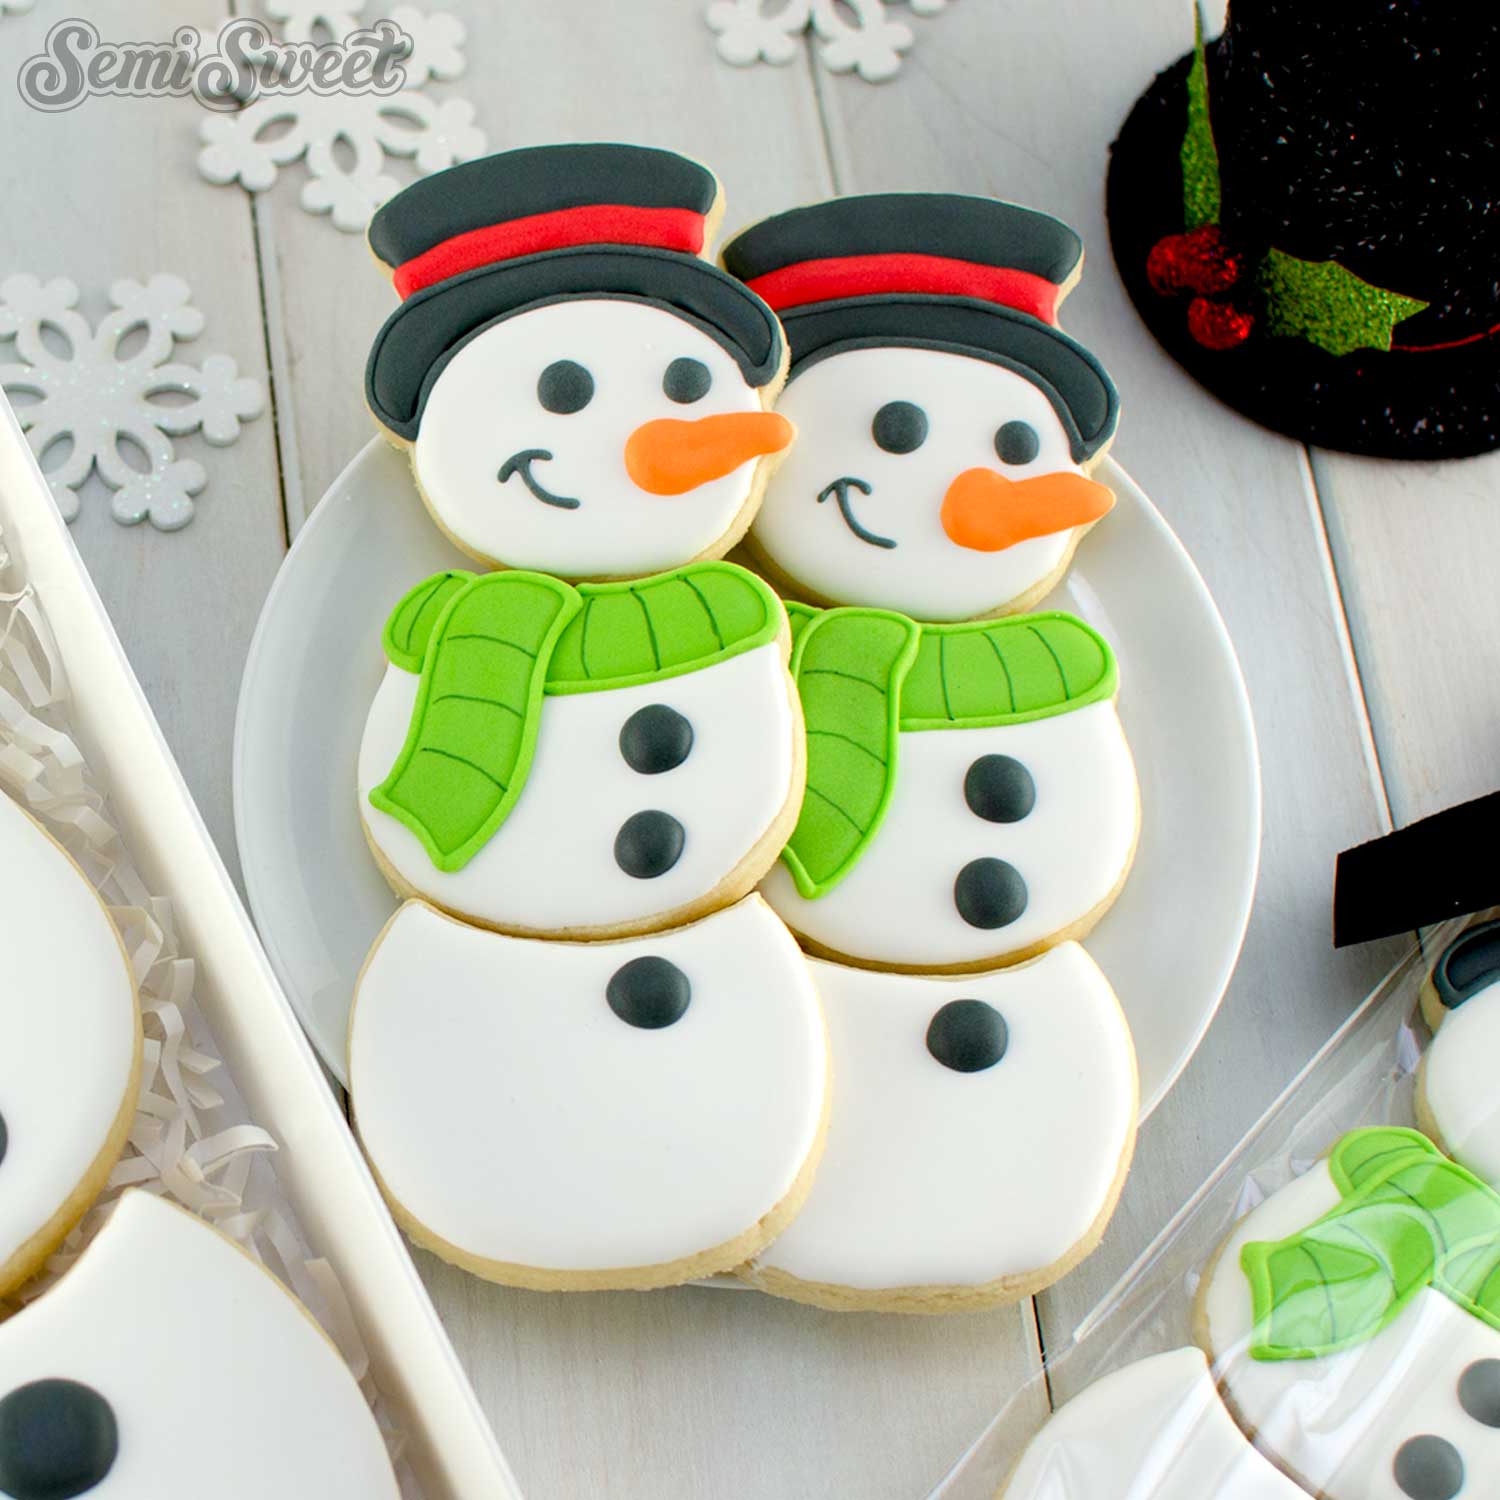 Build a Snowman Set - 4 Cookie Cutters